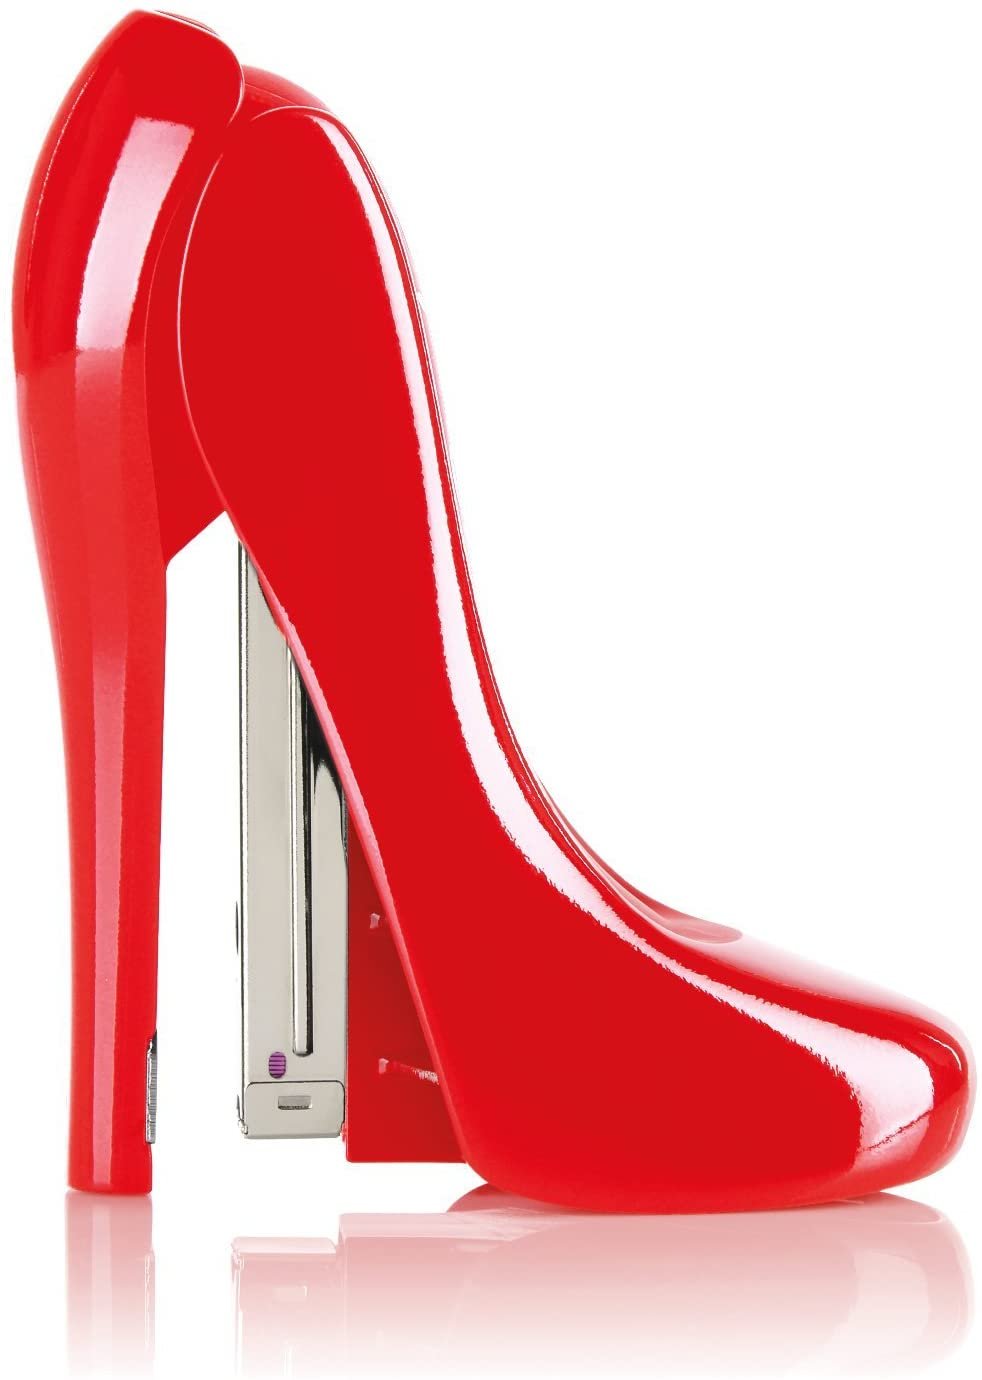 Rexel Stapler High Heel Red Color 